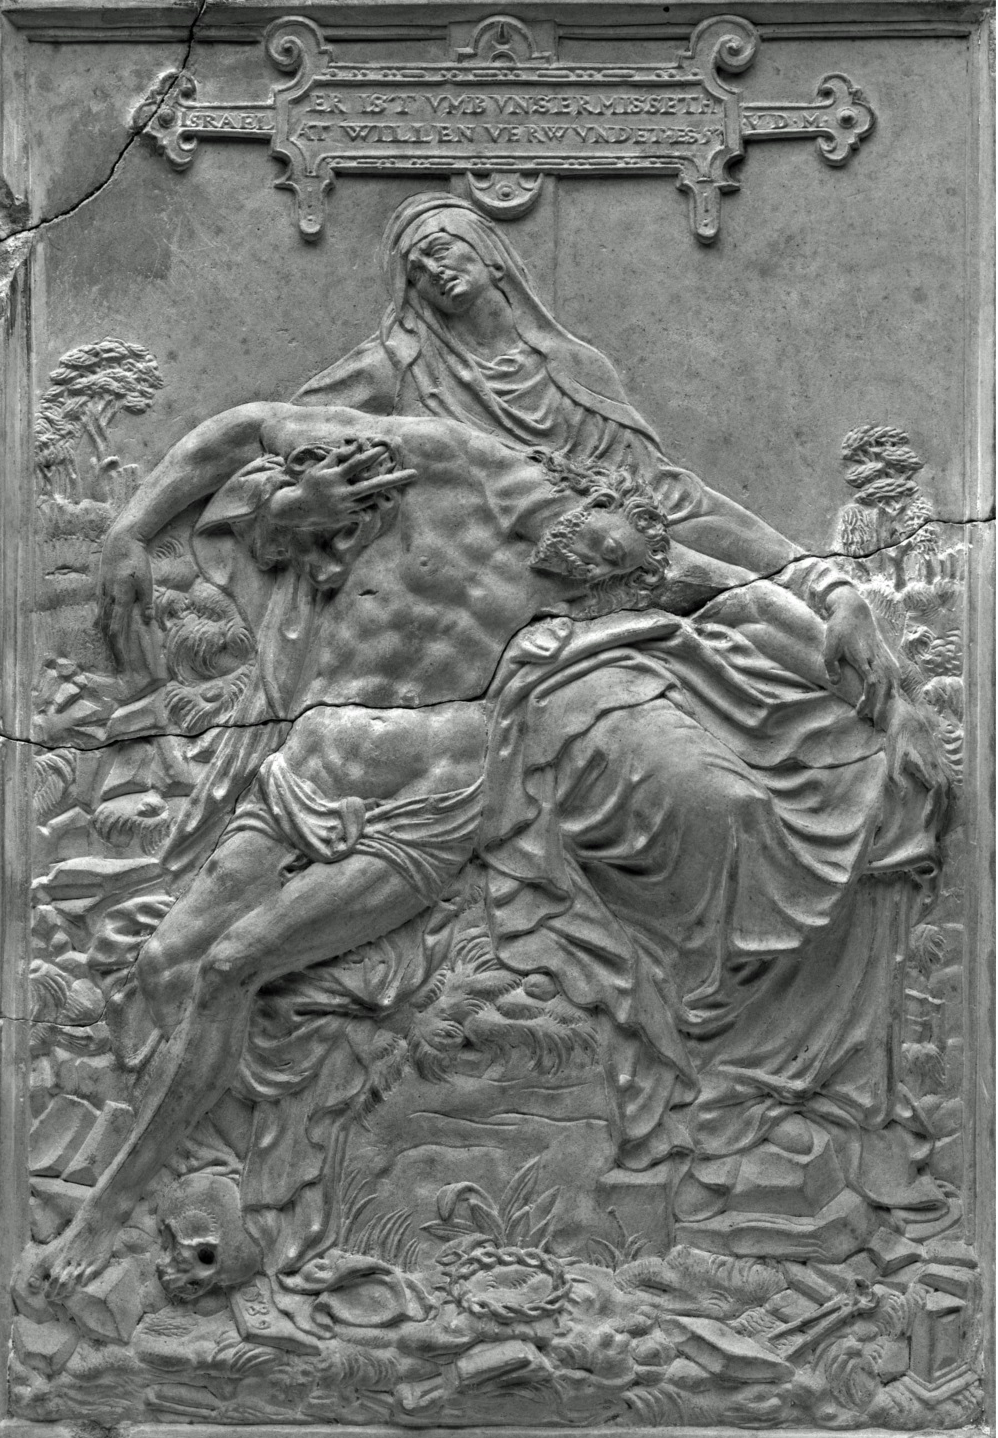 Israel von der Milla: Vesperbild (Pietà), 1589, H 21,9 cm, B 15,6 cm, Solnhofener Stein (Flachrelief), Braunschweig, Herzog Anton Ulrich-Museum, Inv. Nr. Ste 185